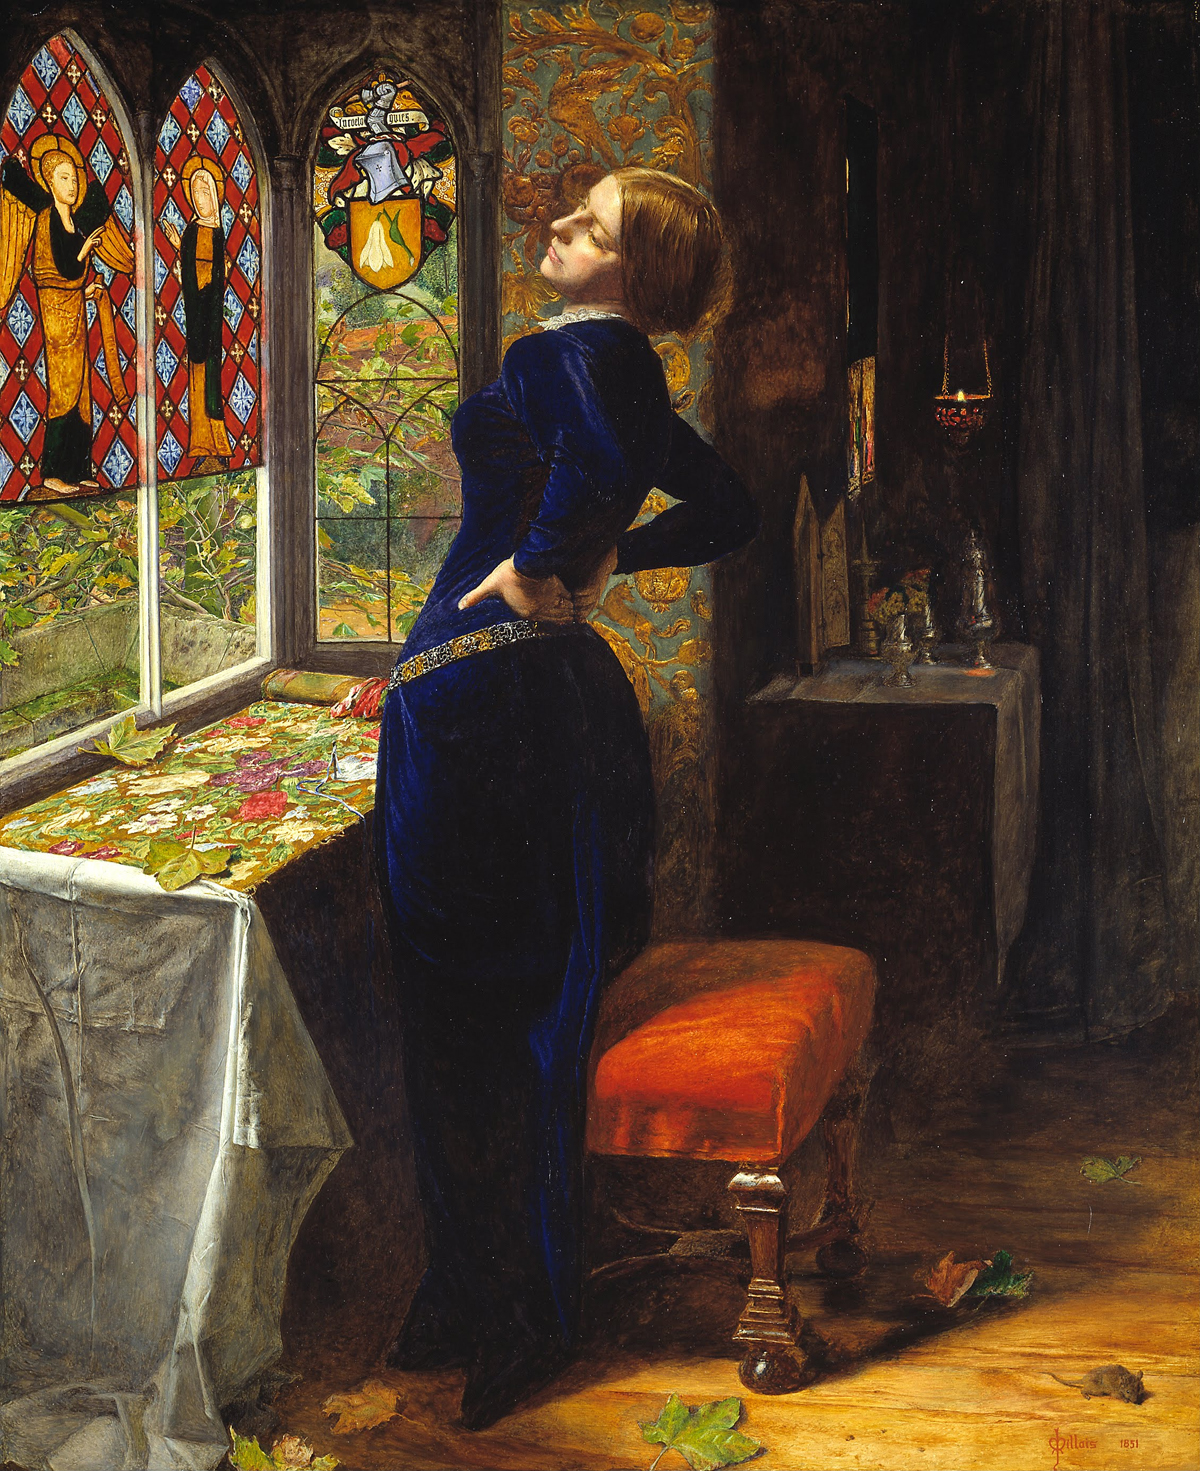 John Everett Millais, 'Mariana,' 1851.